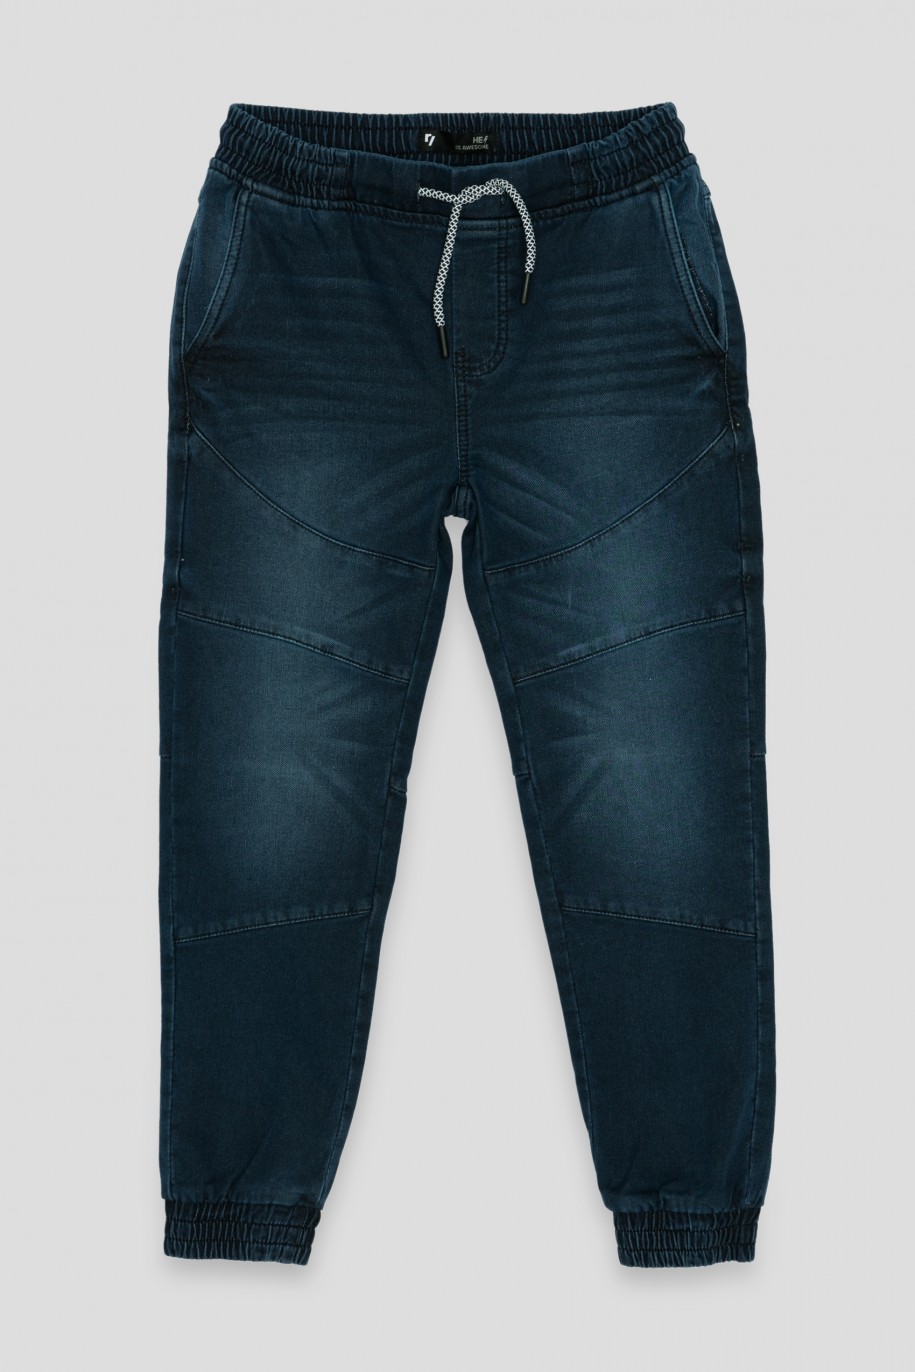 Granatowe jeansy z przeszyciami typu jogger - 36252